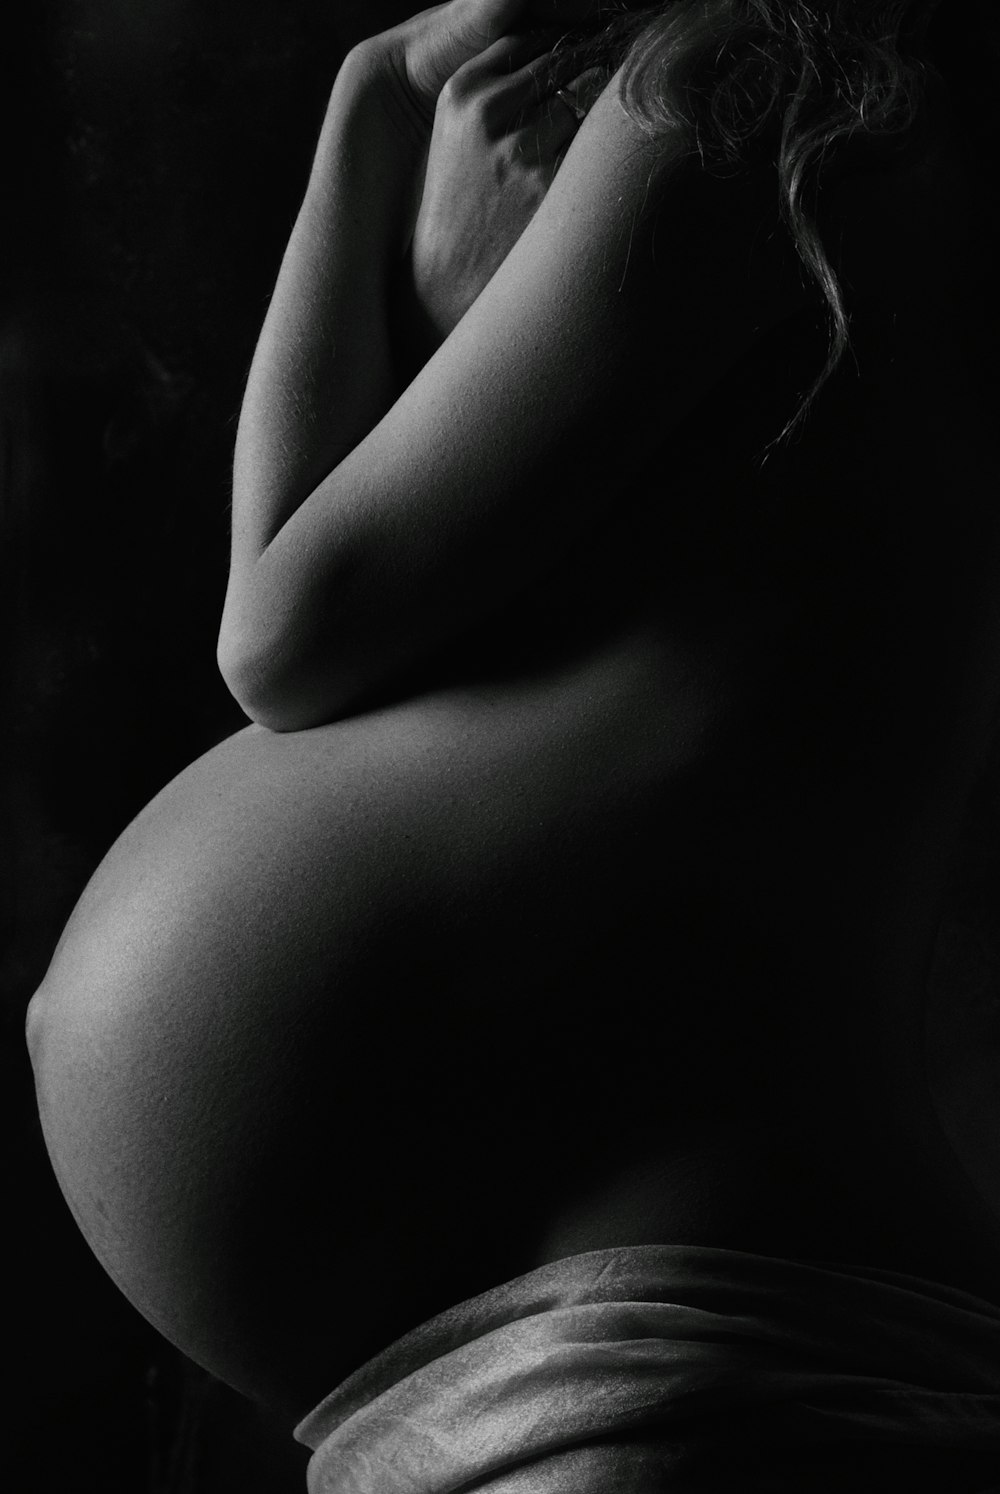 妊娠中の女性のgaryscale写真